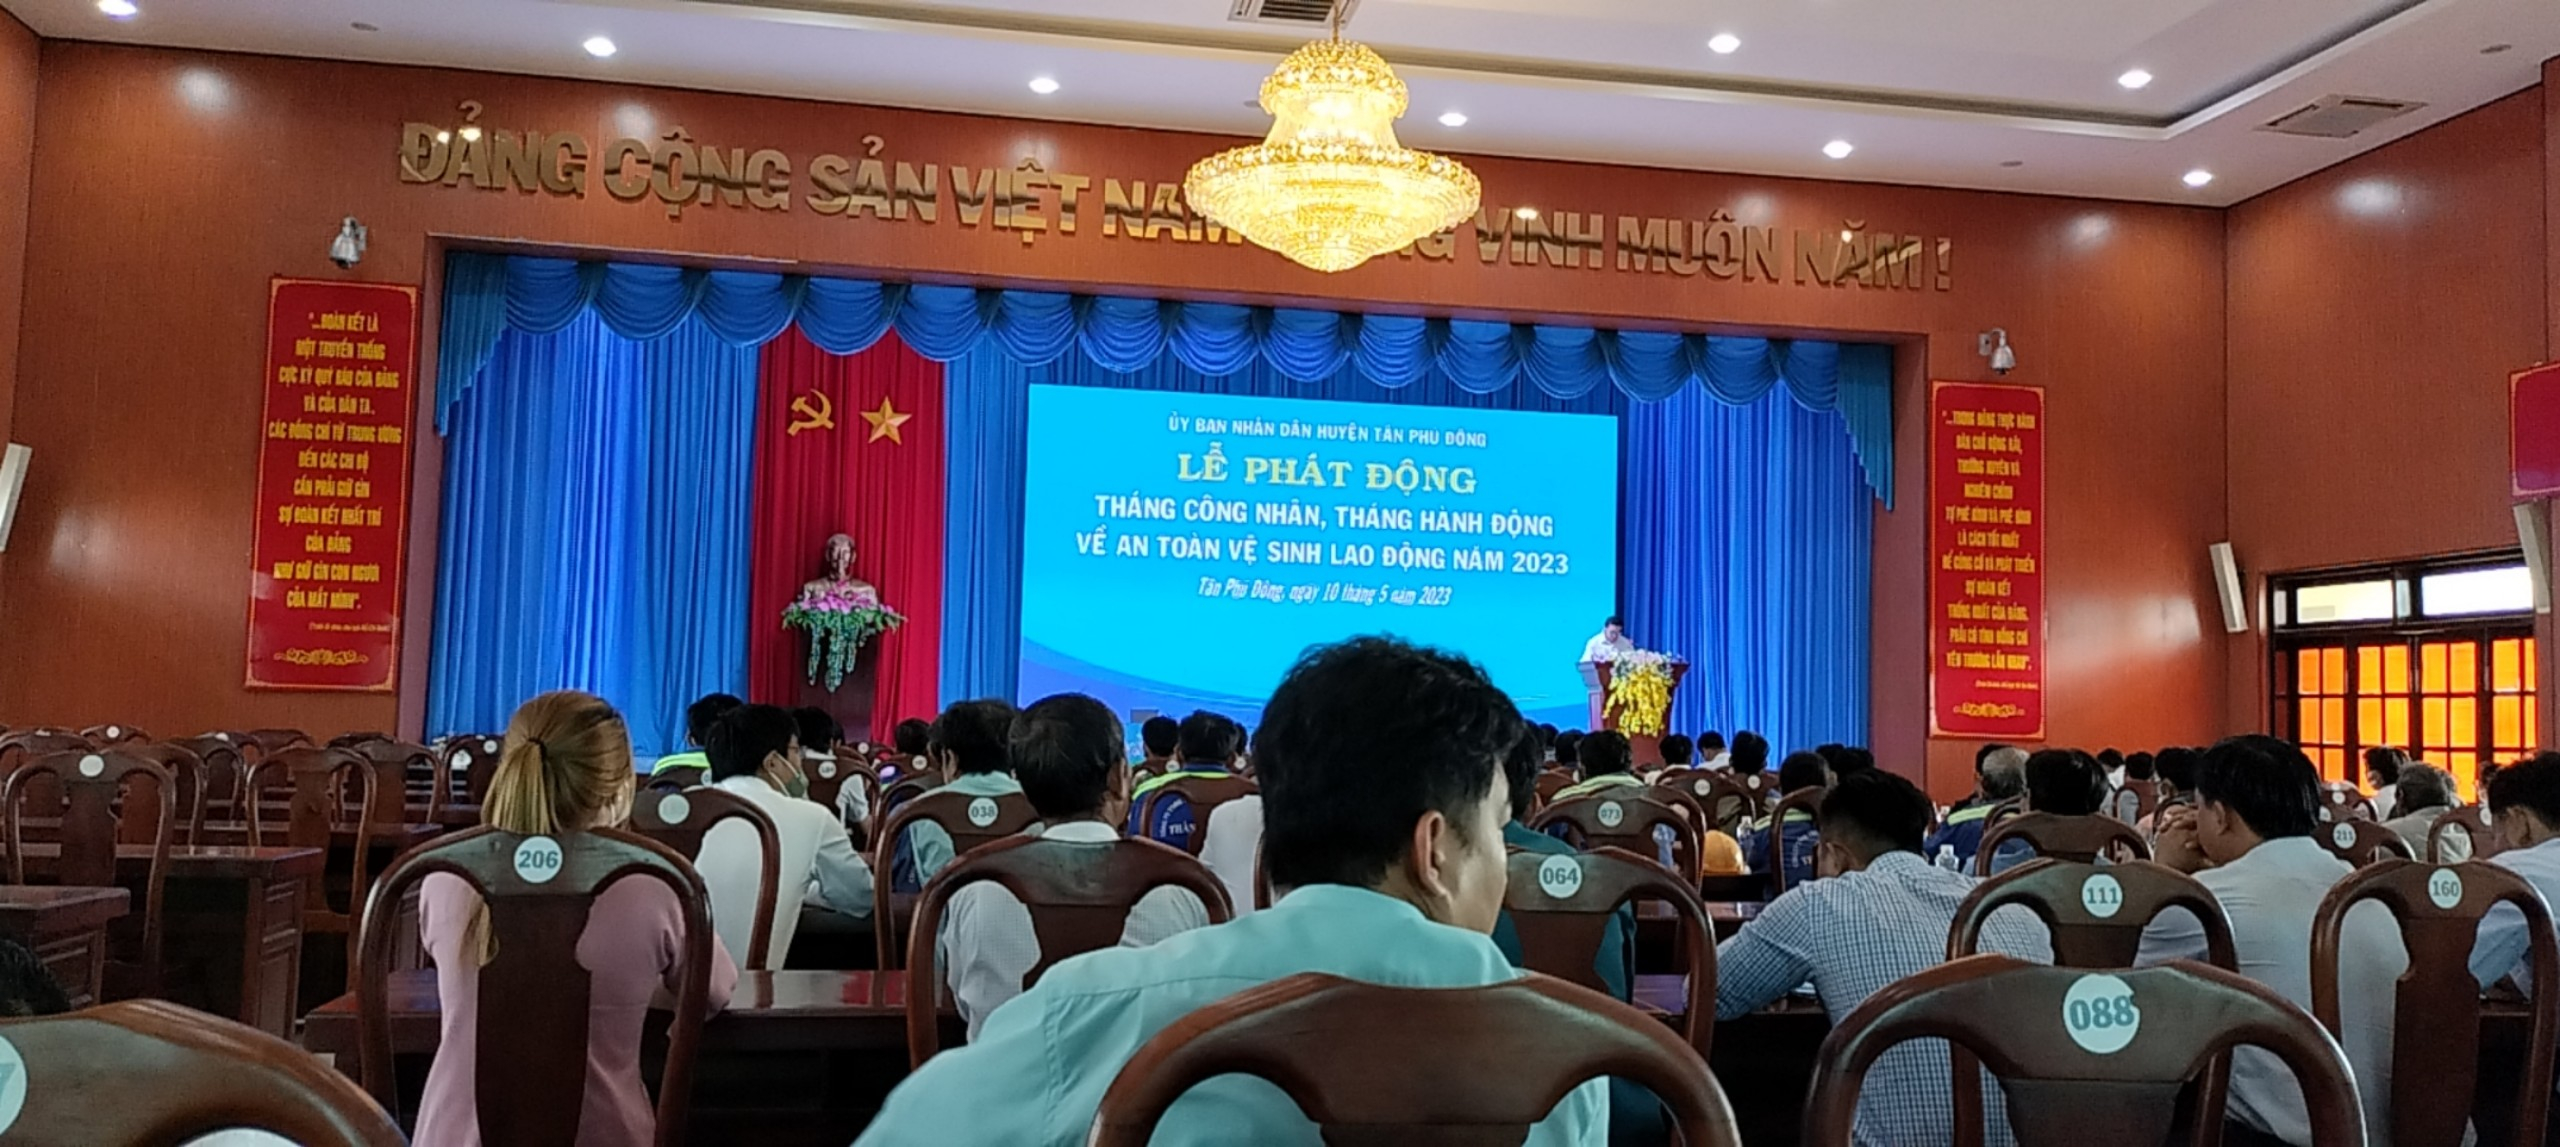 Trung tâm Y tế Tân Phú Đông hưởng ứng tháng hành động An toàn, vệ sinh lao động năm 2023